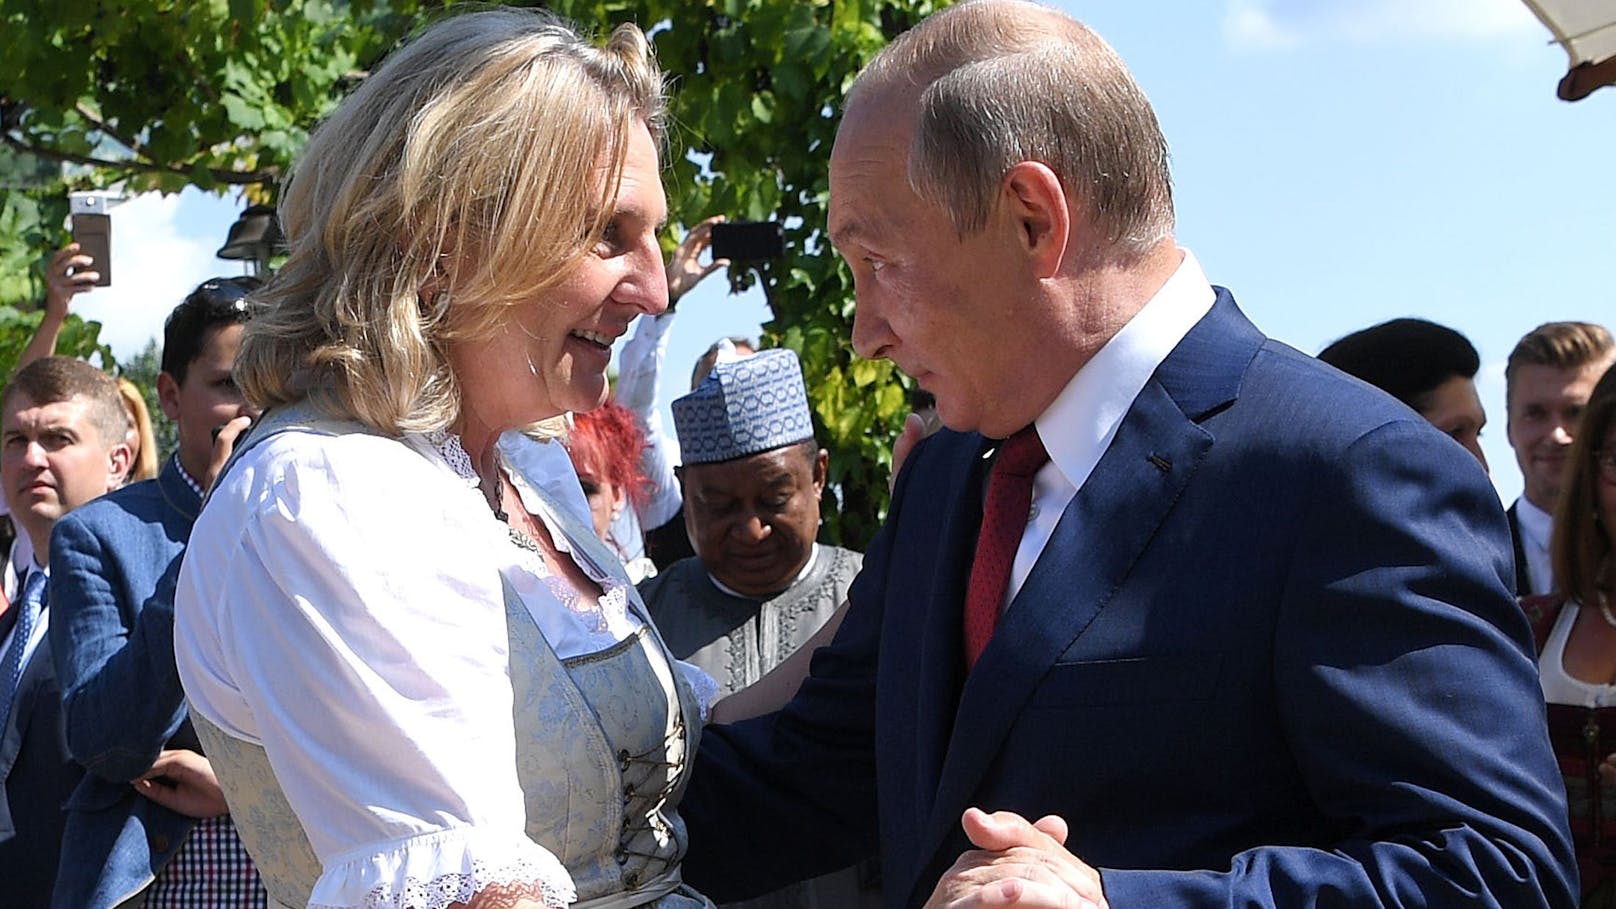 Er war der Stargast auf der Hochzeit von Ex-Außenministerin <strong>Karin Kneissl</strong>. Wladimir Putin nahm die Einladung der damaligen Spitzenpolitikerin und jetzigen Rosneft-Aufsichtsrätin mit Freude an und schwang sogar das Tanzbein. Die ganze Welt schaute dabei zu, wie Kneissl vor dem russischen Präsidenten auf die Knie ging.